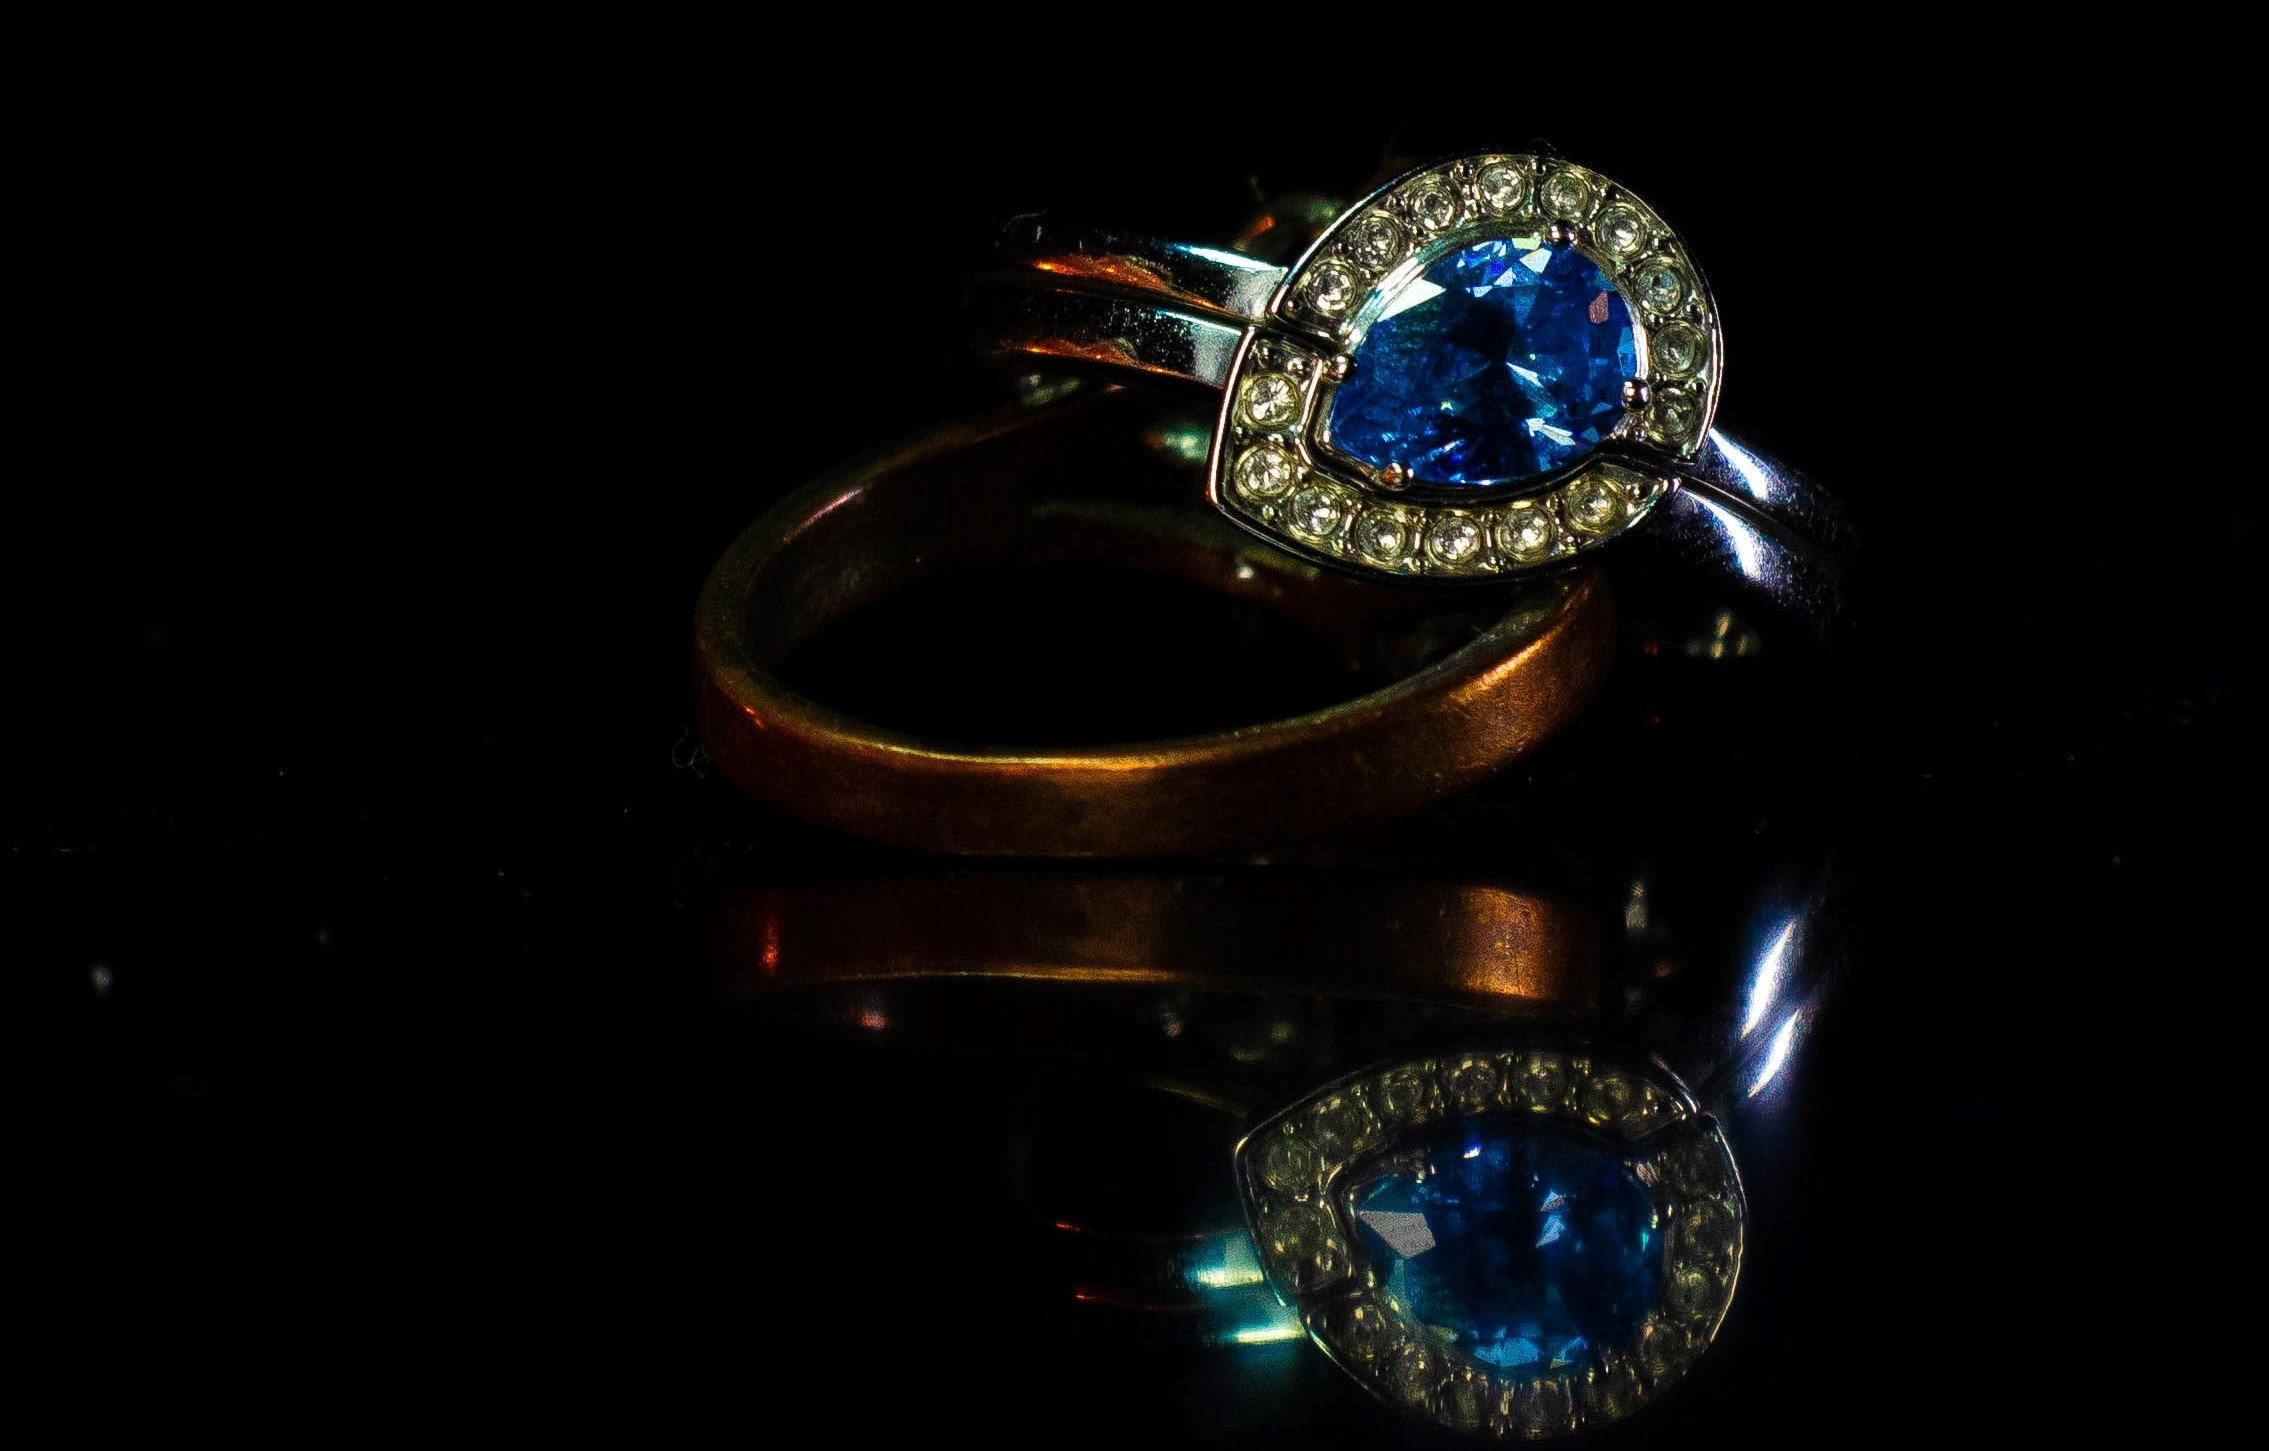 Der Ring war ein Familienerbstück im Wert von 300.000 Euro. | Quelle: Unsplash